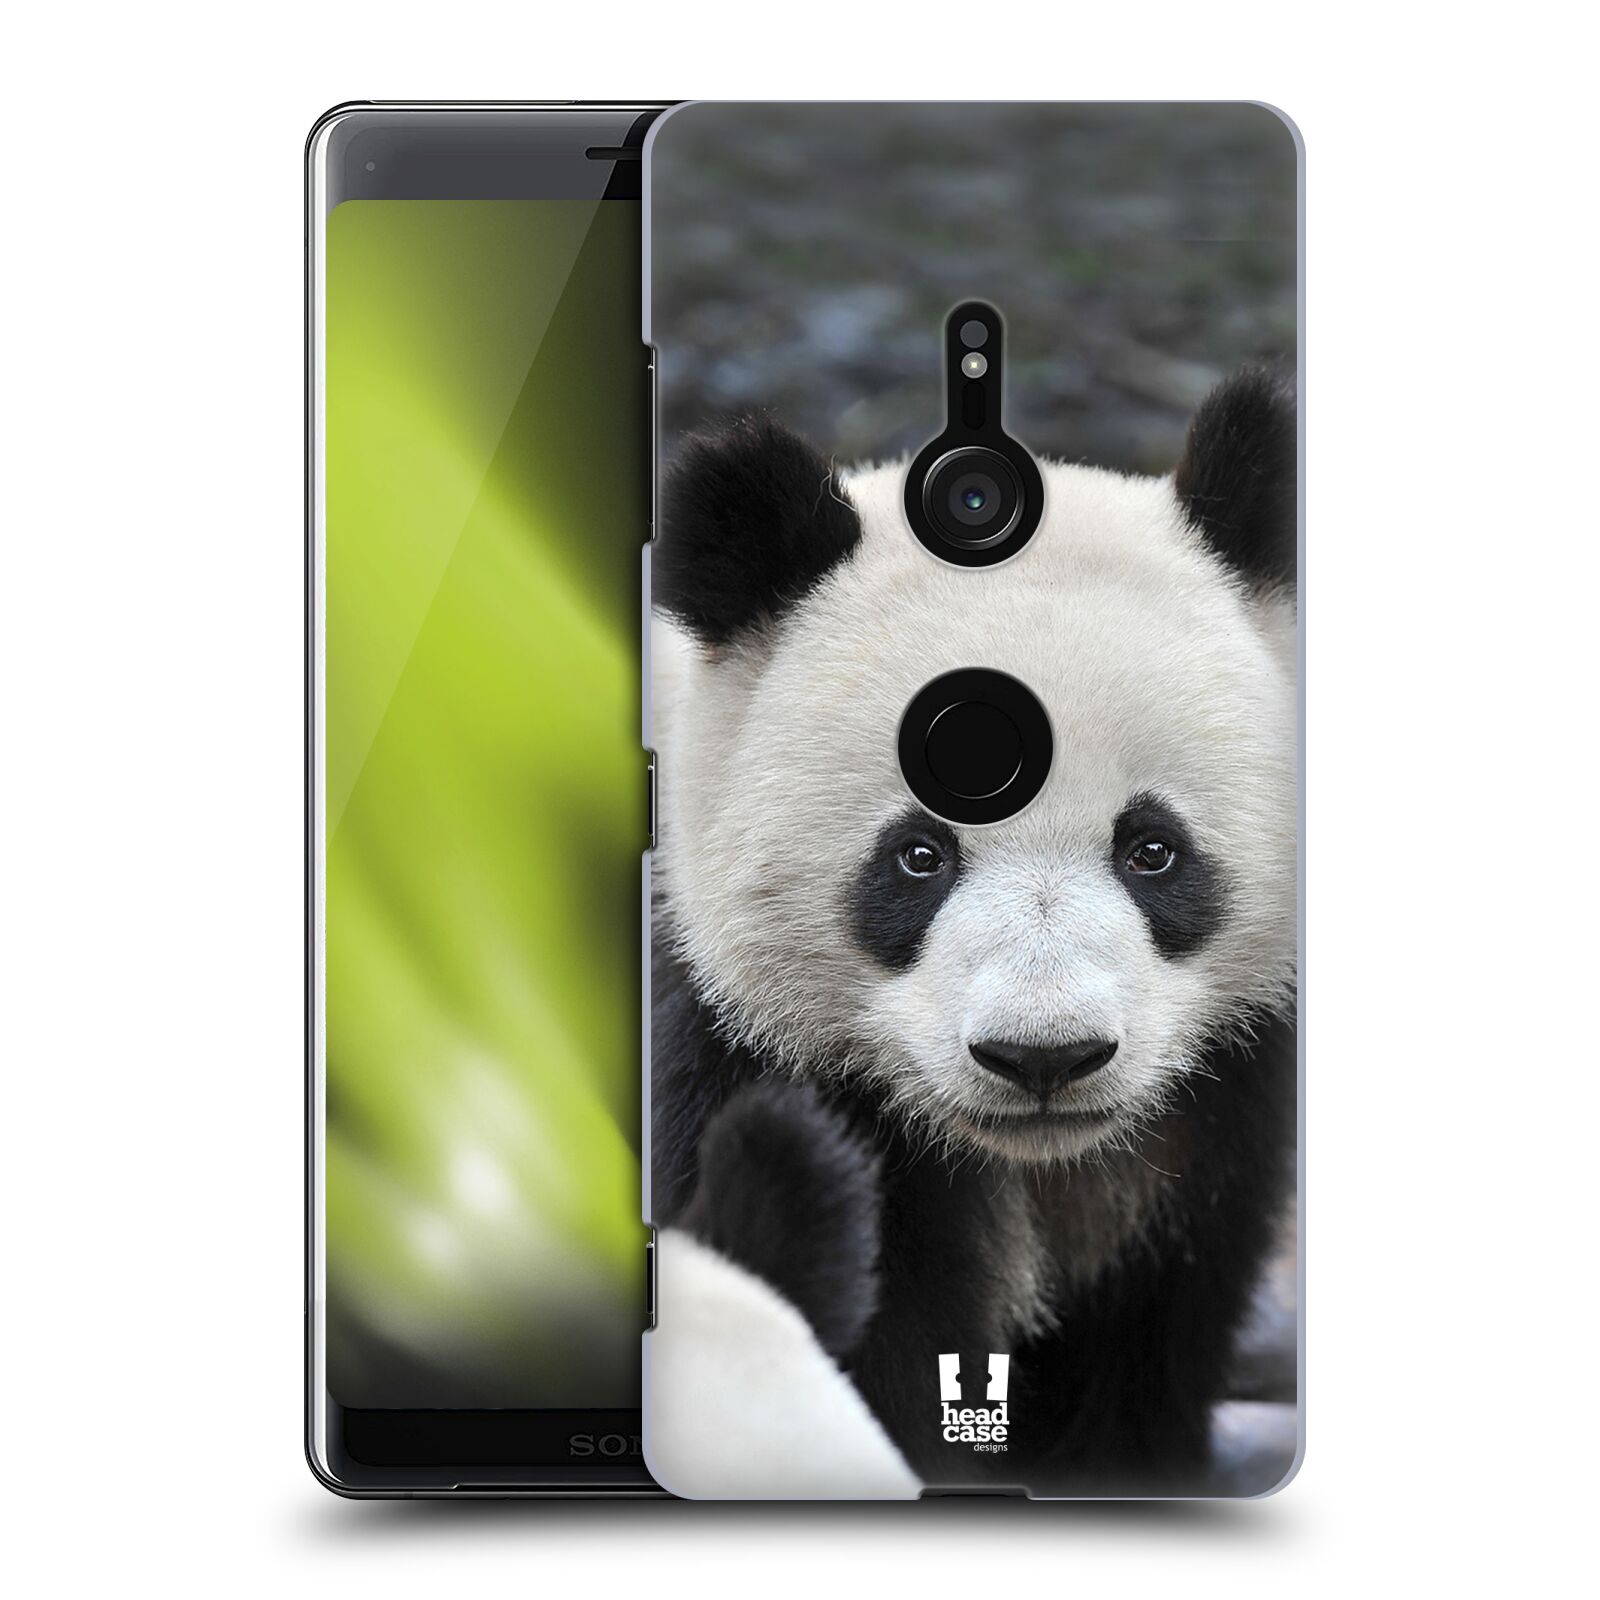 Zadní obal pro mobil Sony Xperia XZ3 - HEAD CASE - Svět zvířat medvěd panda